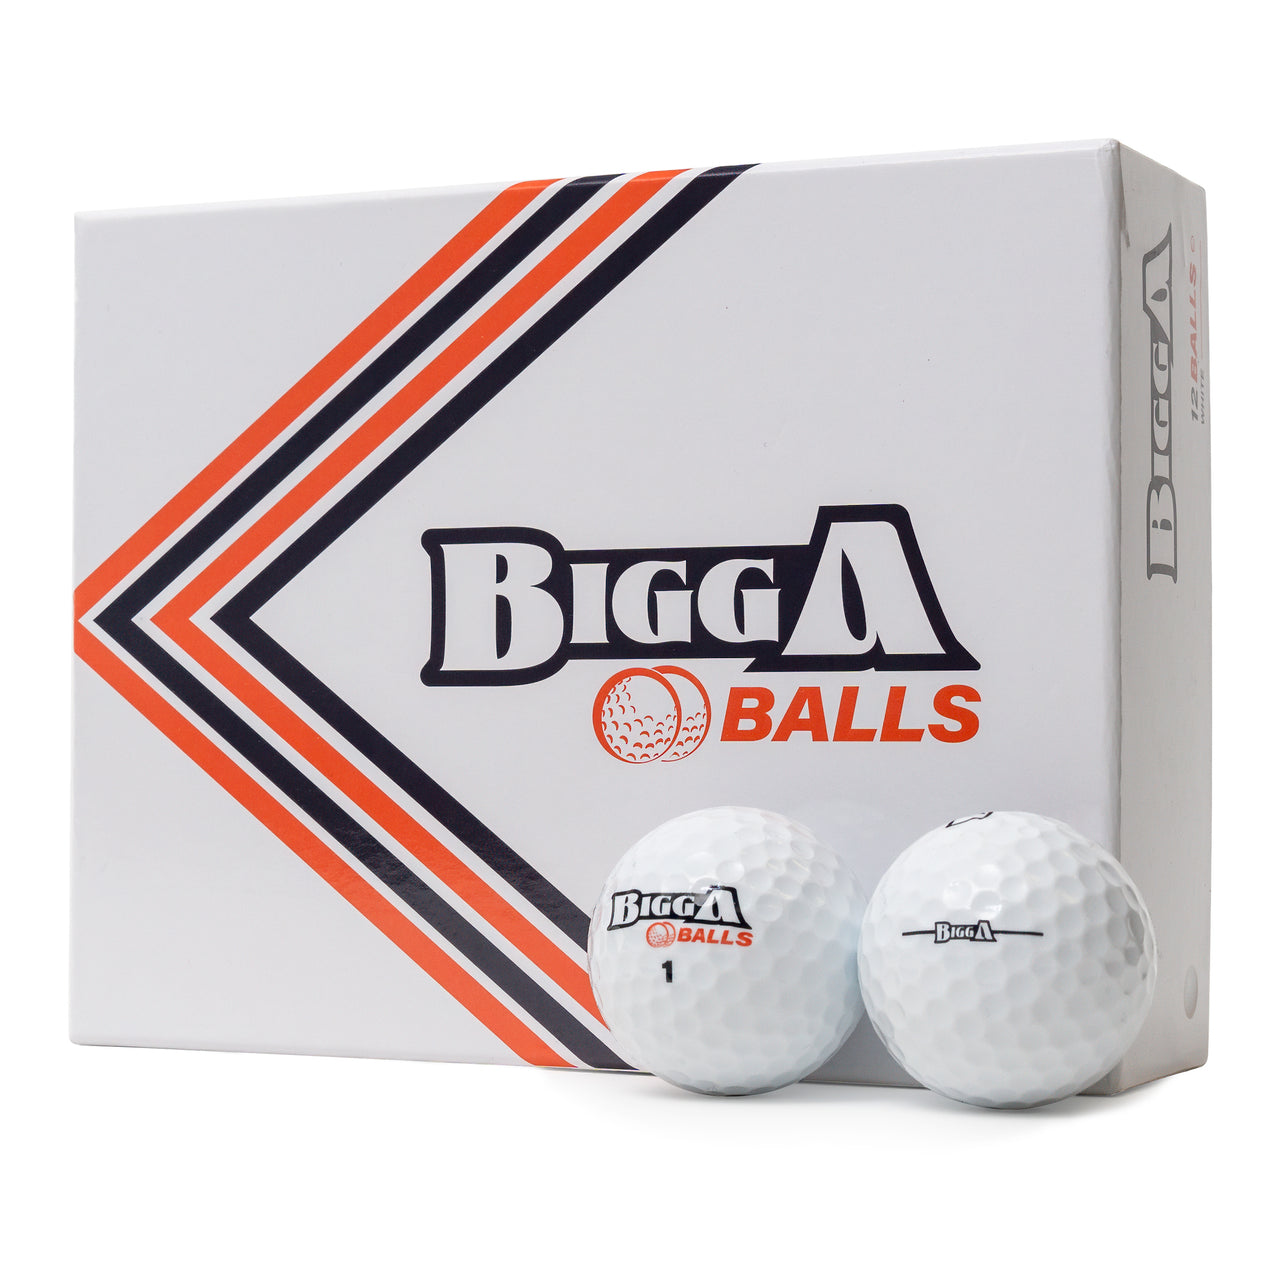 Bigga Balls Golf Balls - White (12 pack)